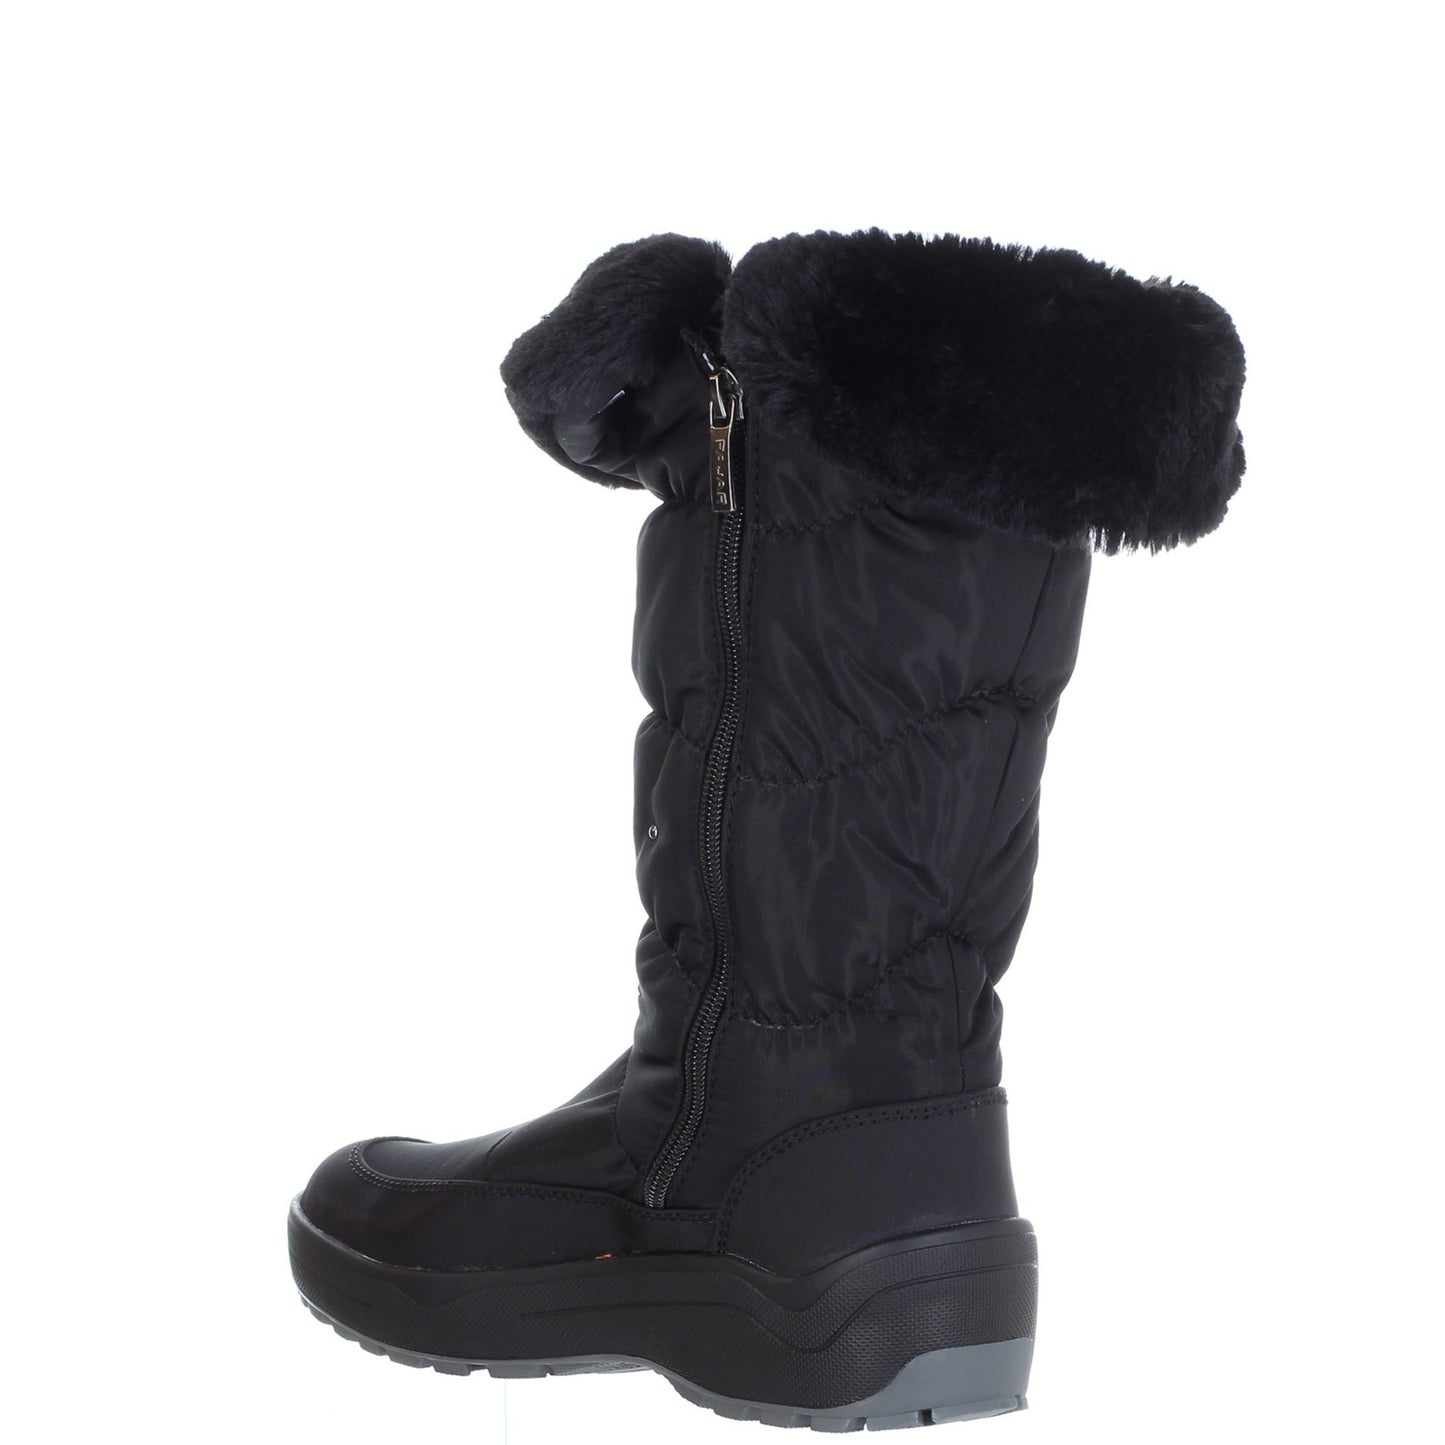 VARSOVIE Women's Winter Boots